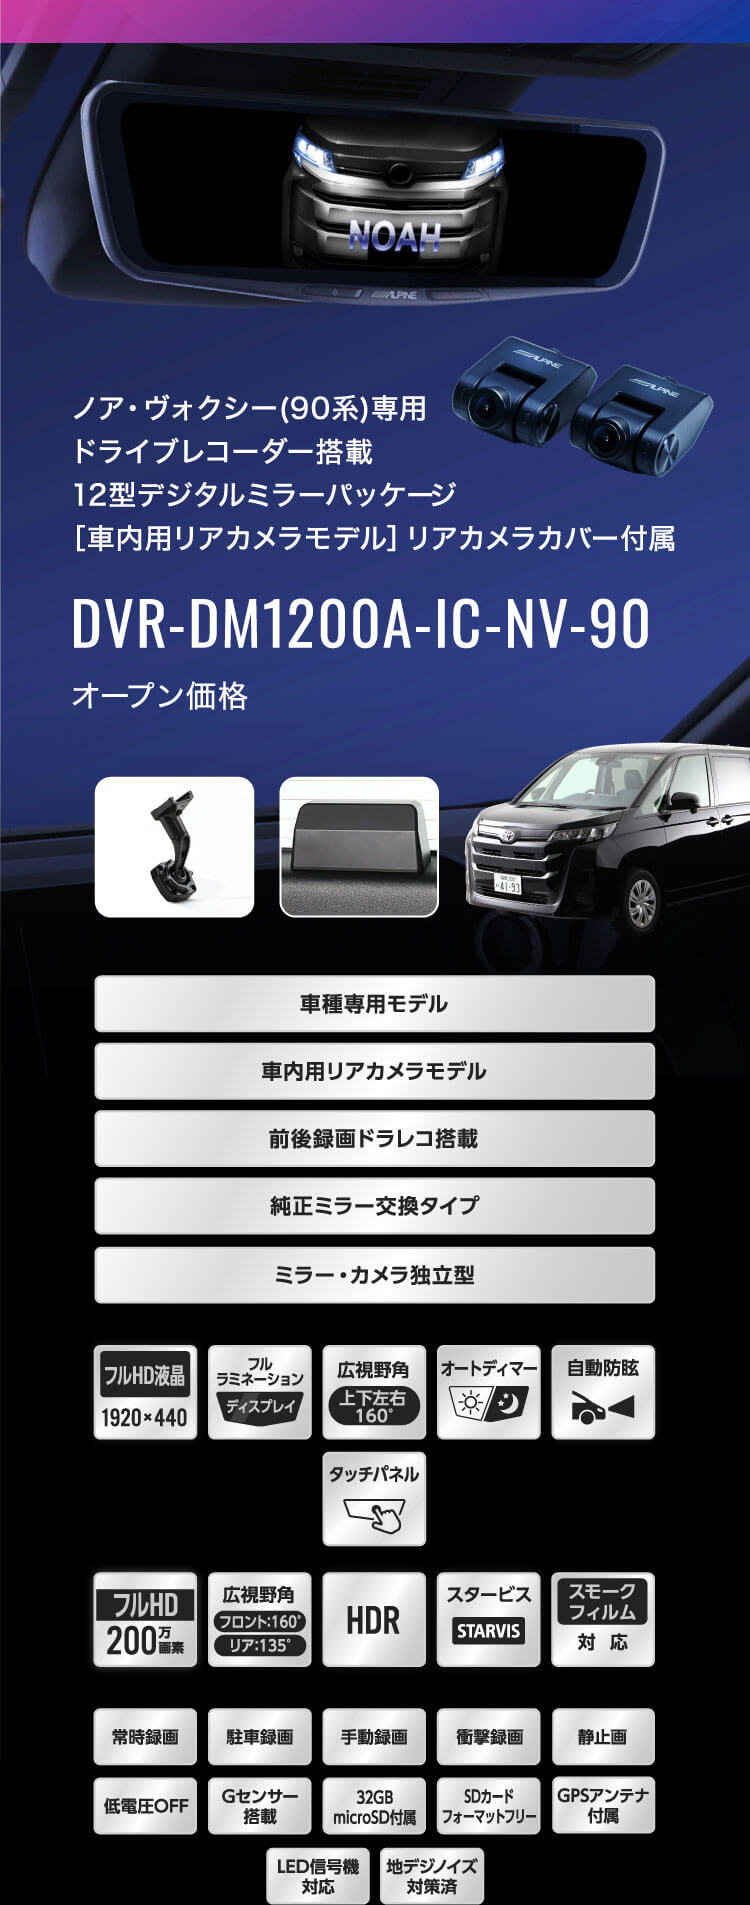 ノア・ヴォクシー(90系)専用 ドライブレコーダー搭載12型デジタルミラーパッケージ［車内用リアカメラモデル］リアカメラカバー付属 DVR-DM1200A-IC-NV-90 オープン価格